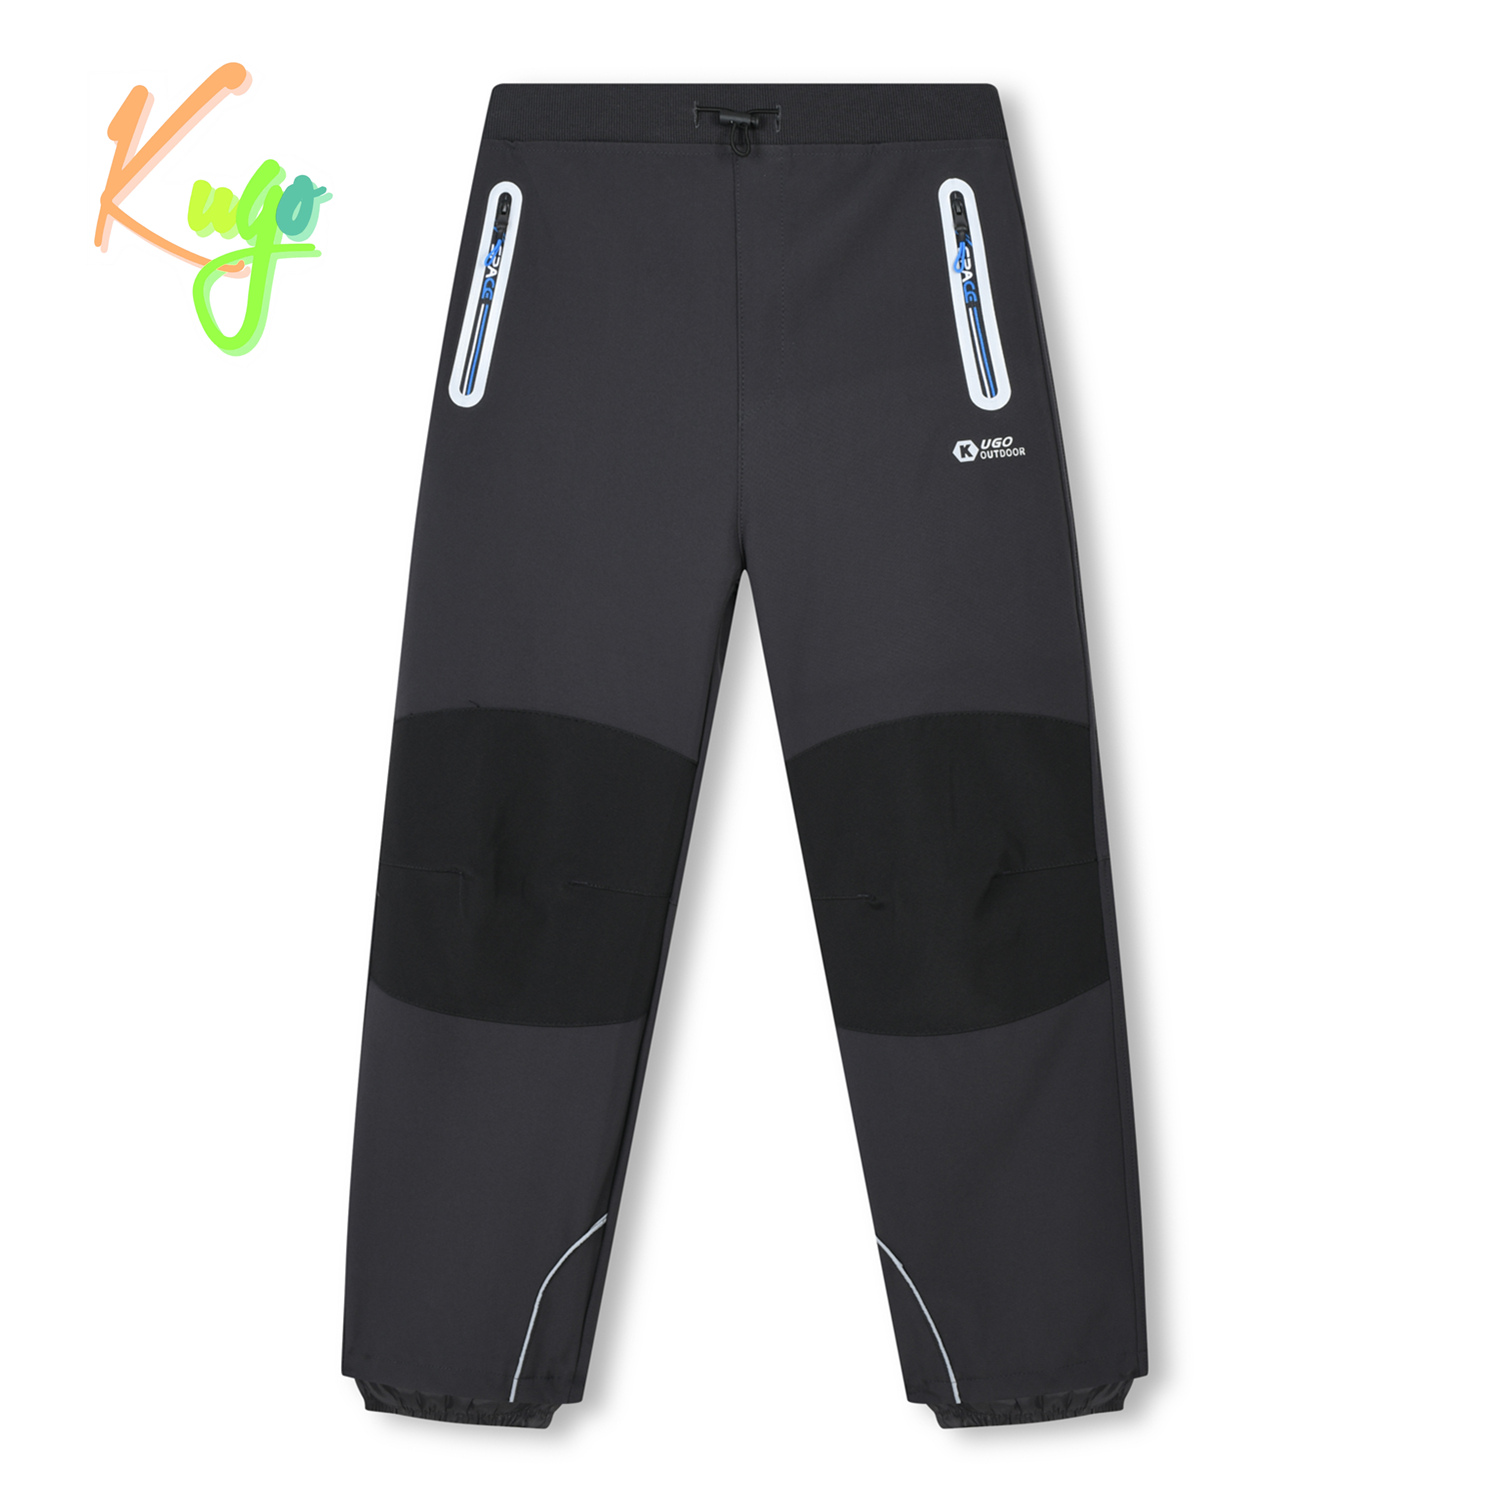 Chlapecké softshellové kalhoty - KUGO HK3119, tmavě šedá / modré zipy Barva: Šedá, Velikost: 146